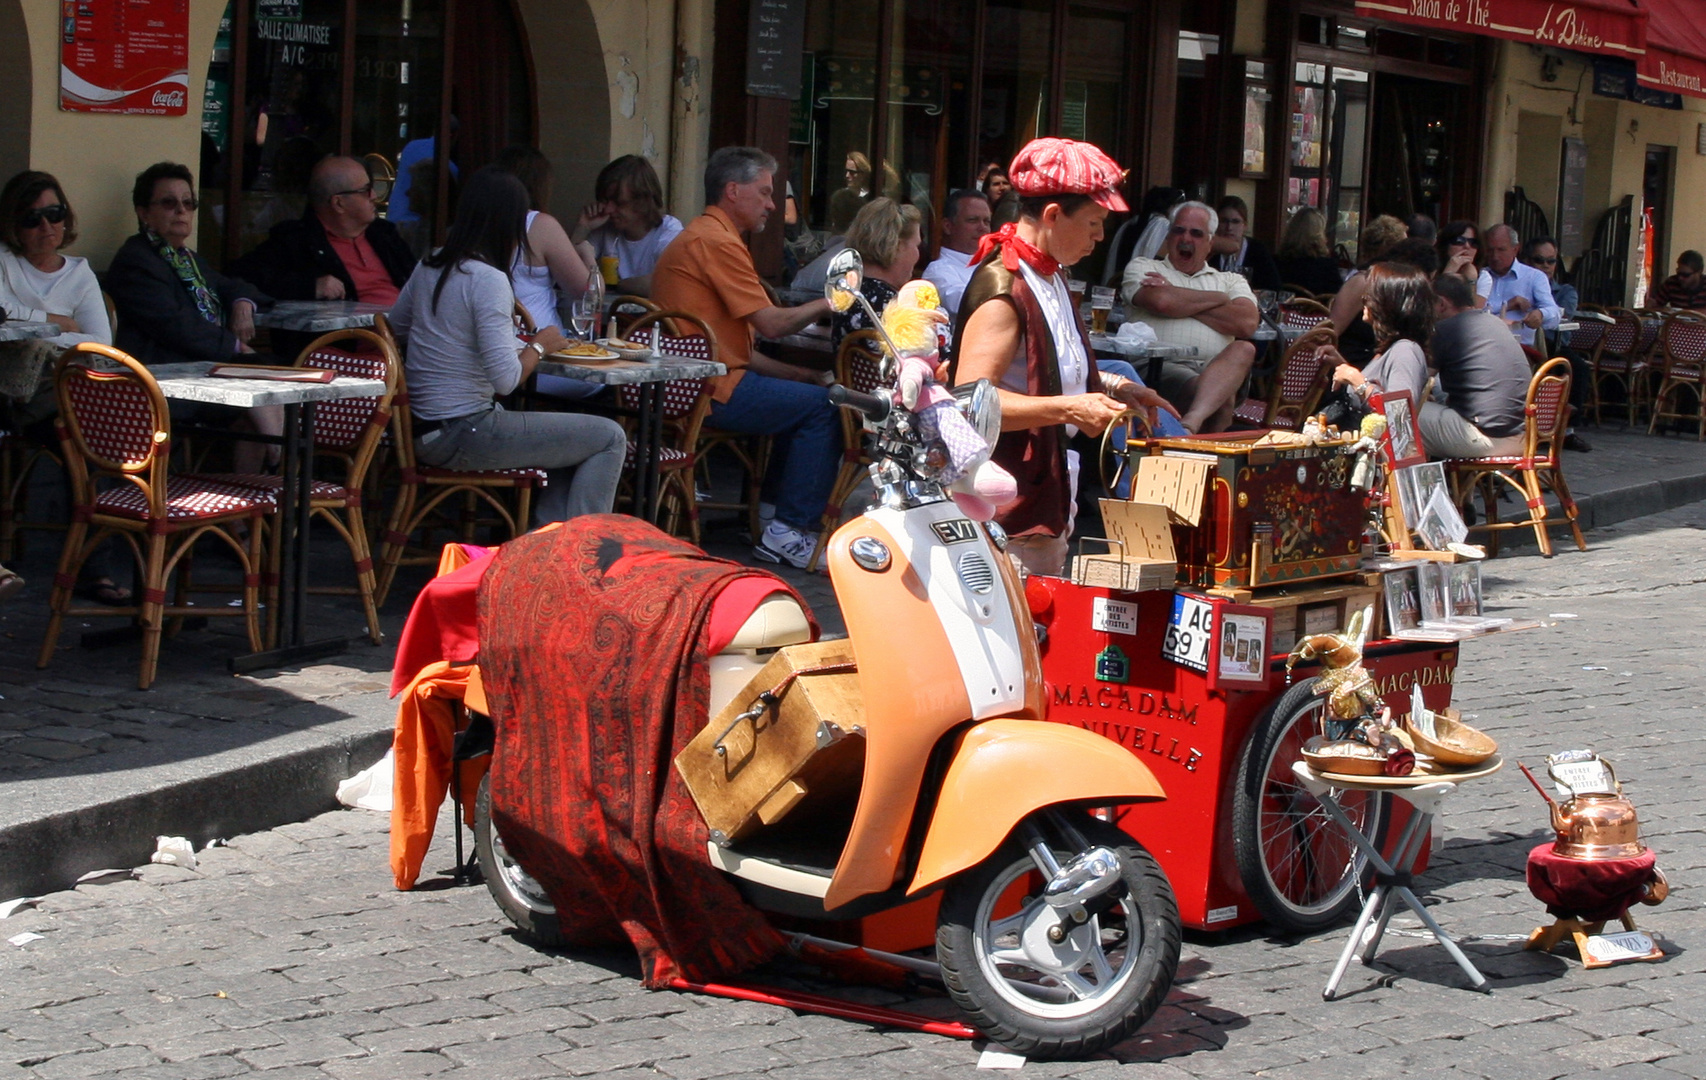 Straßenverkauf am Montmartre